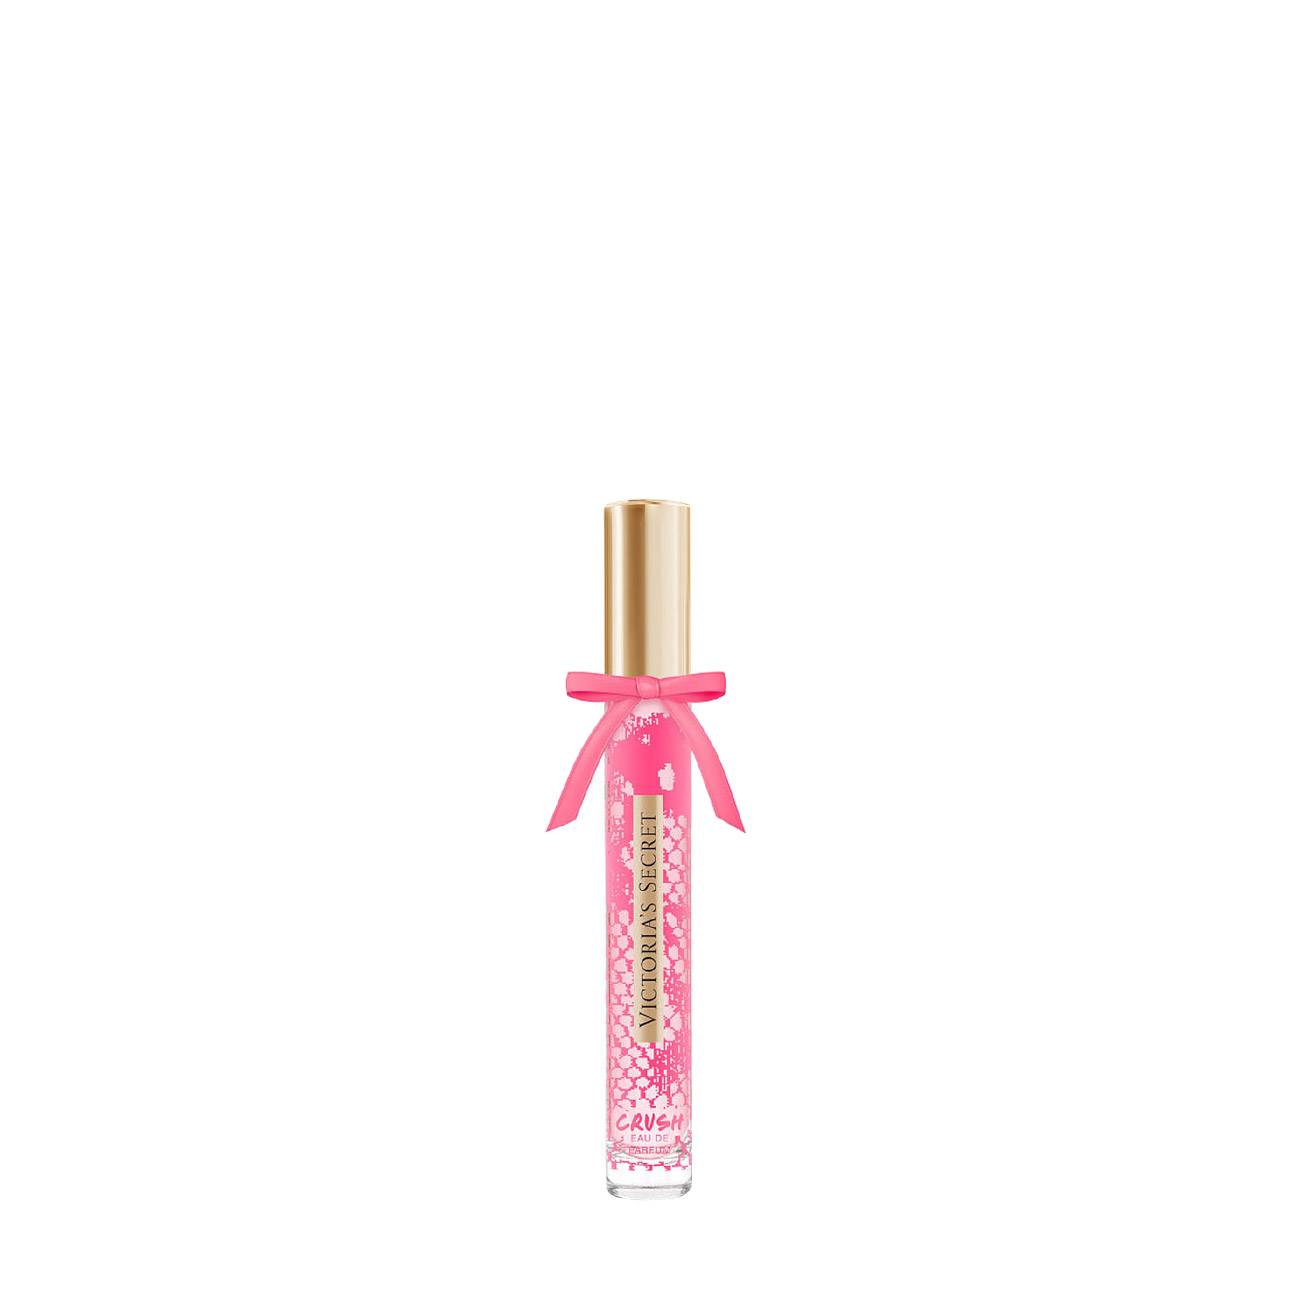 Apa de Parfum Victoria’s Secret CRUSH ROLLERBALL 7ml cu comanda online